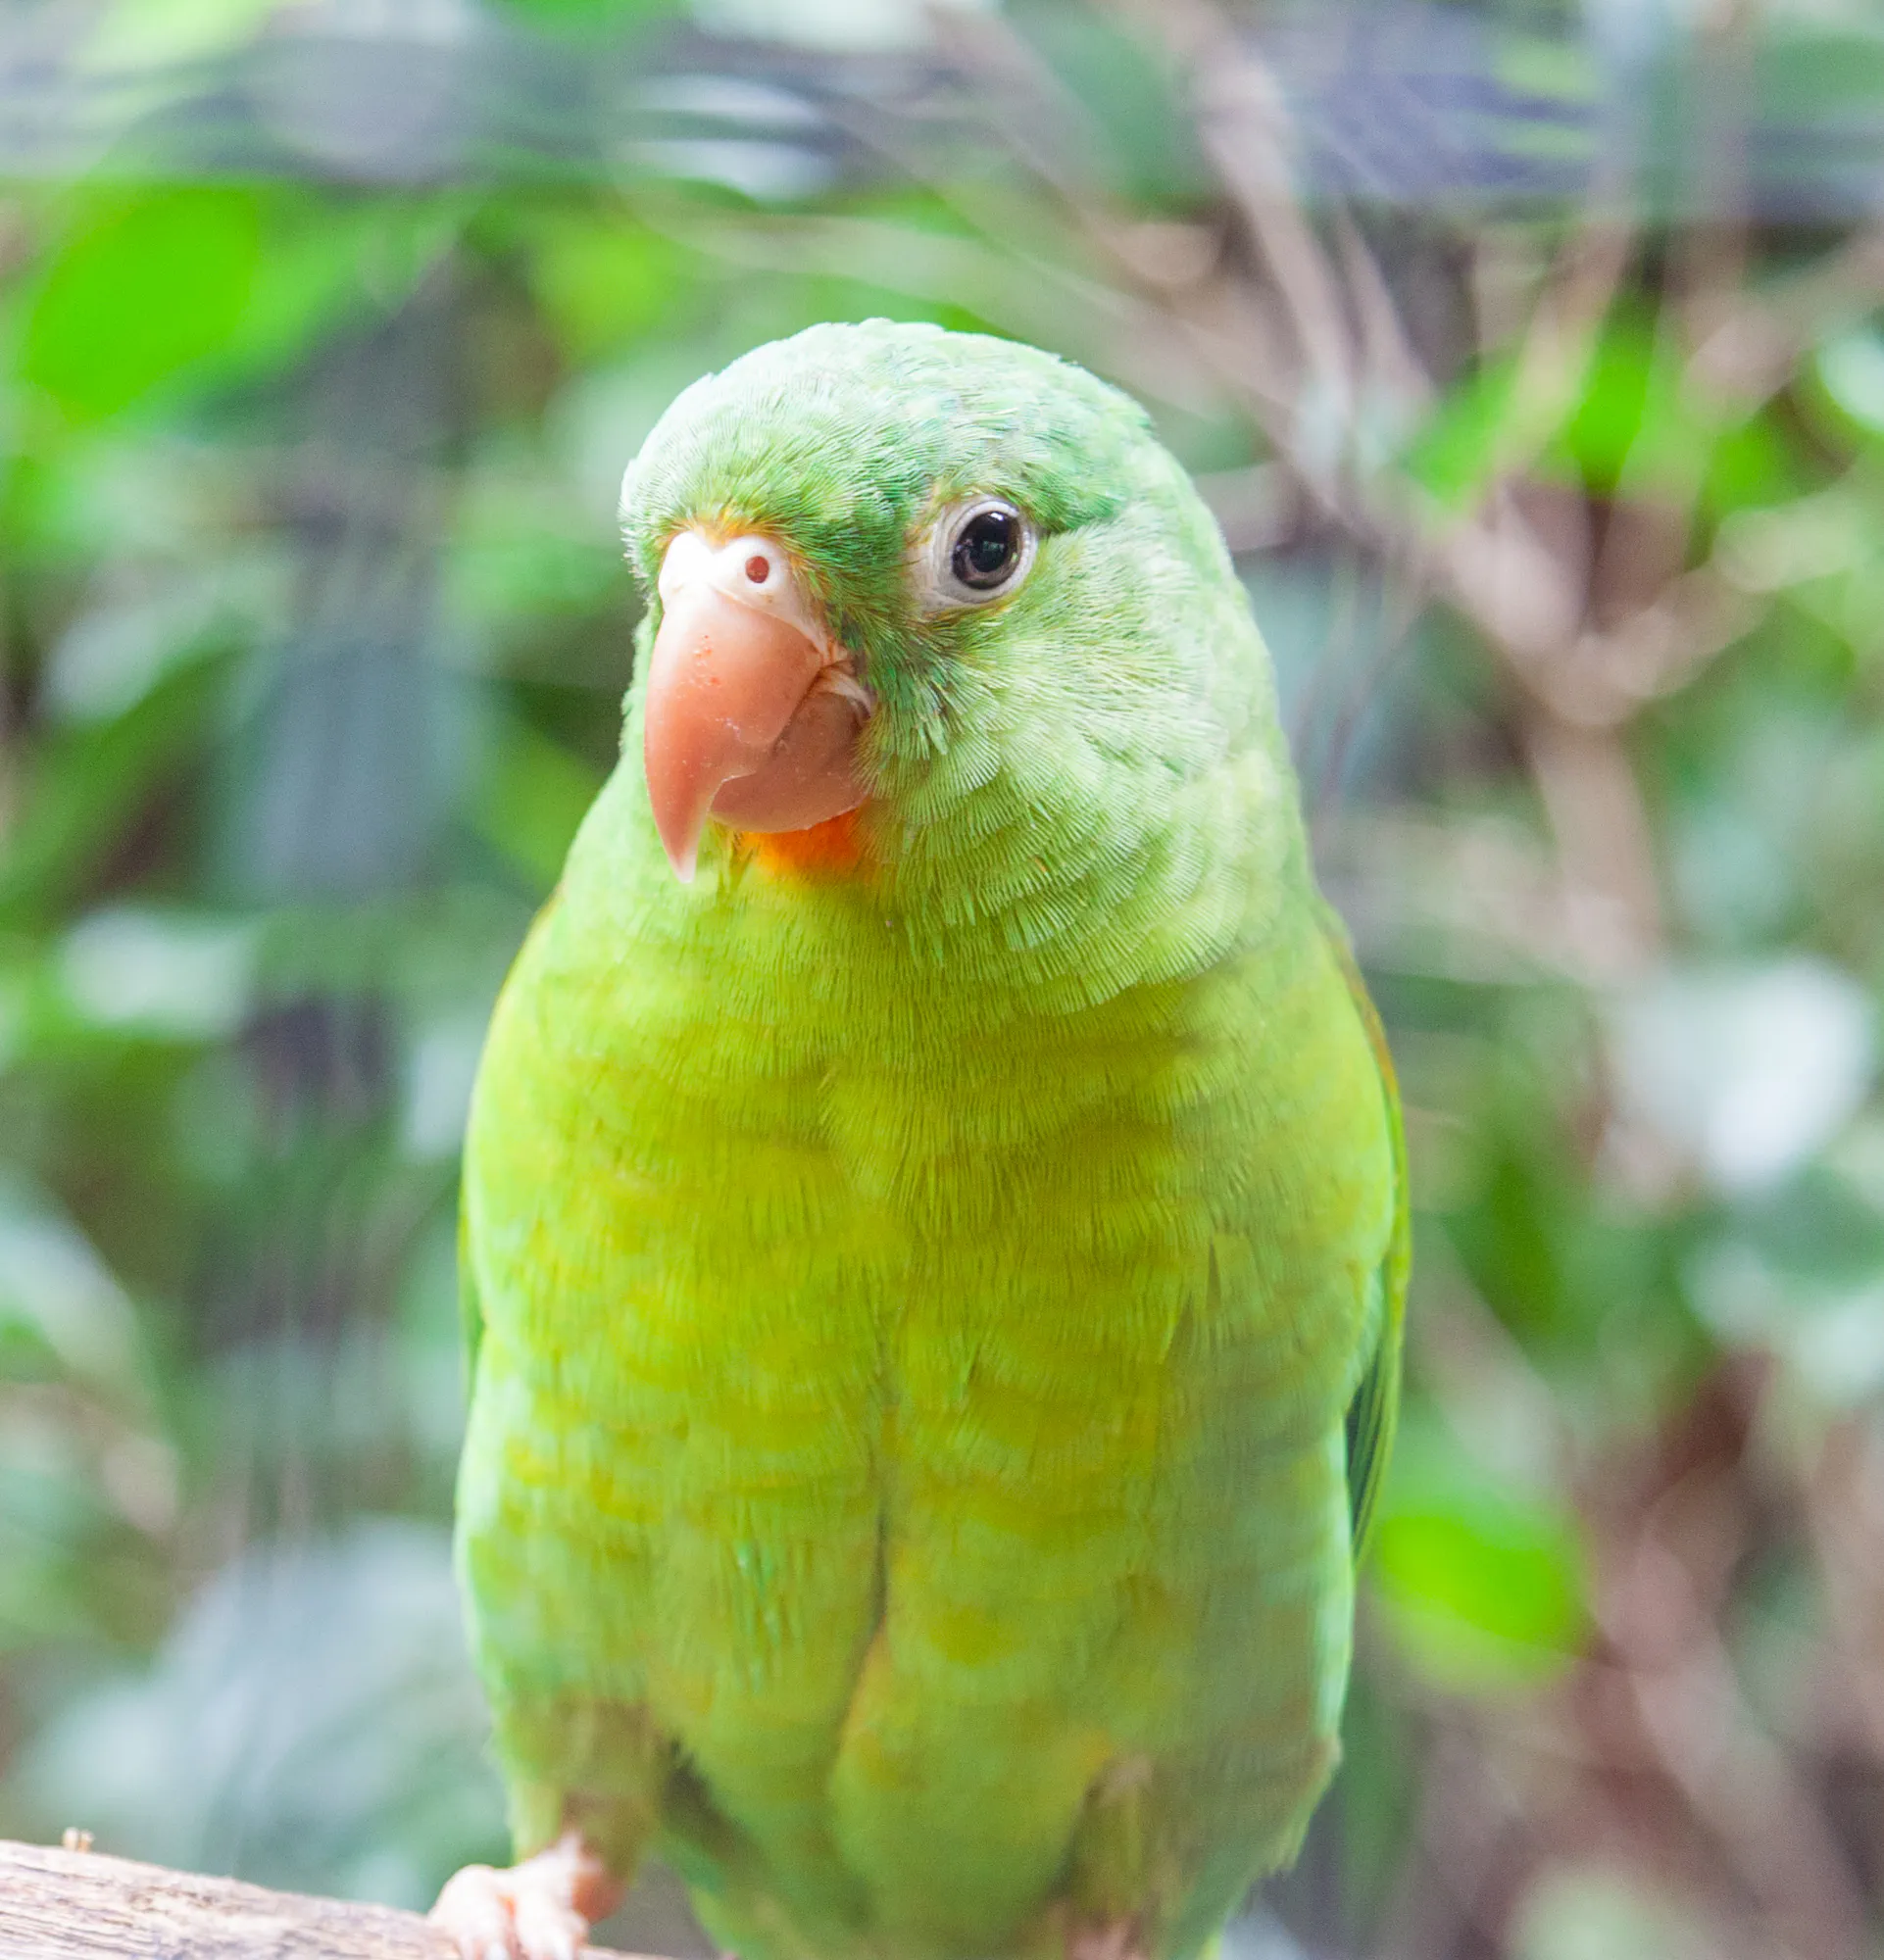 A Little Green Parrot